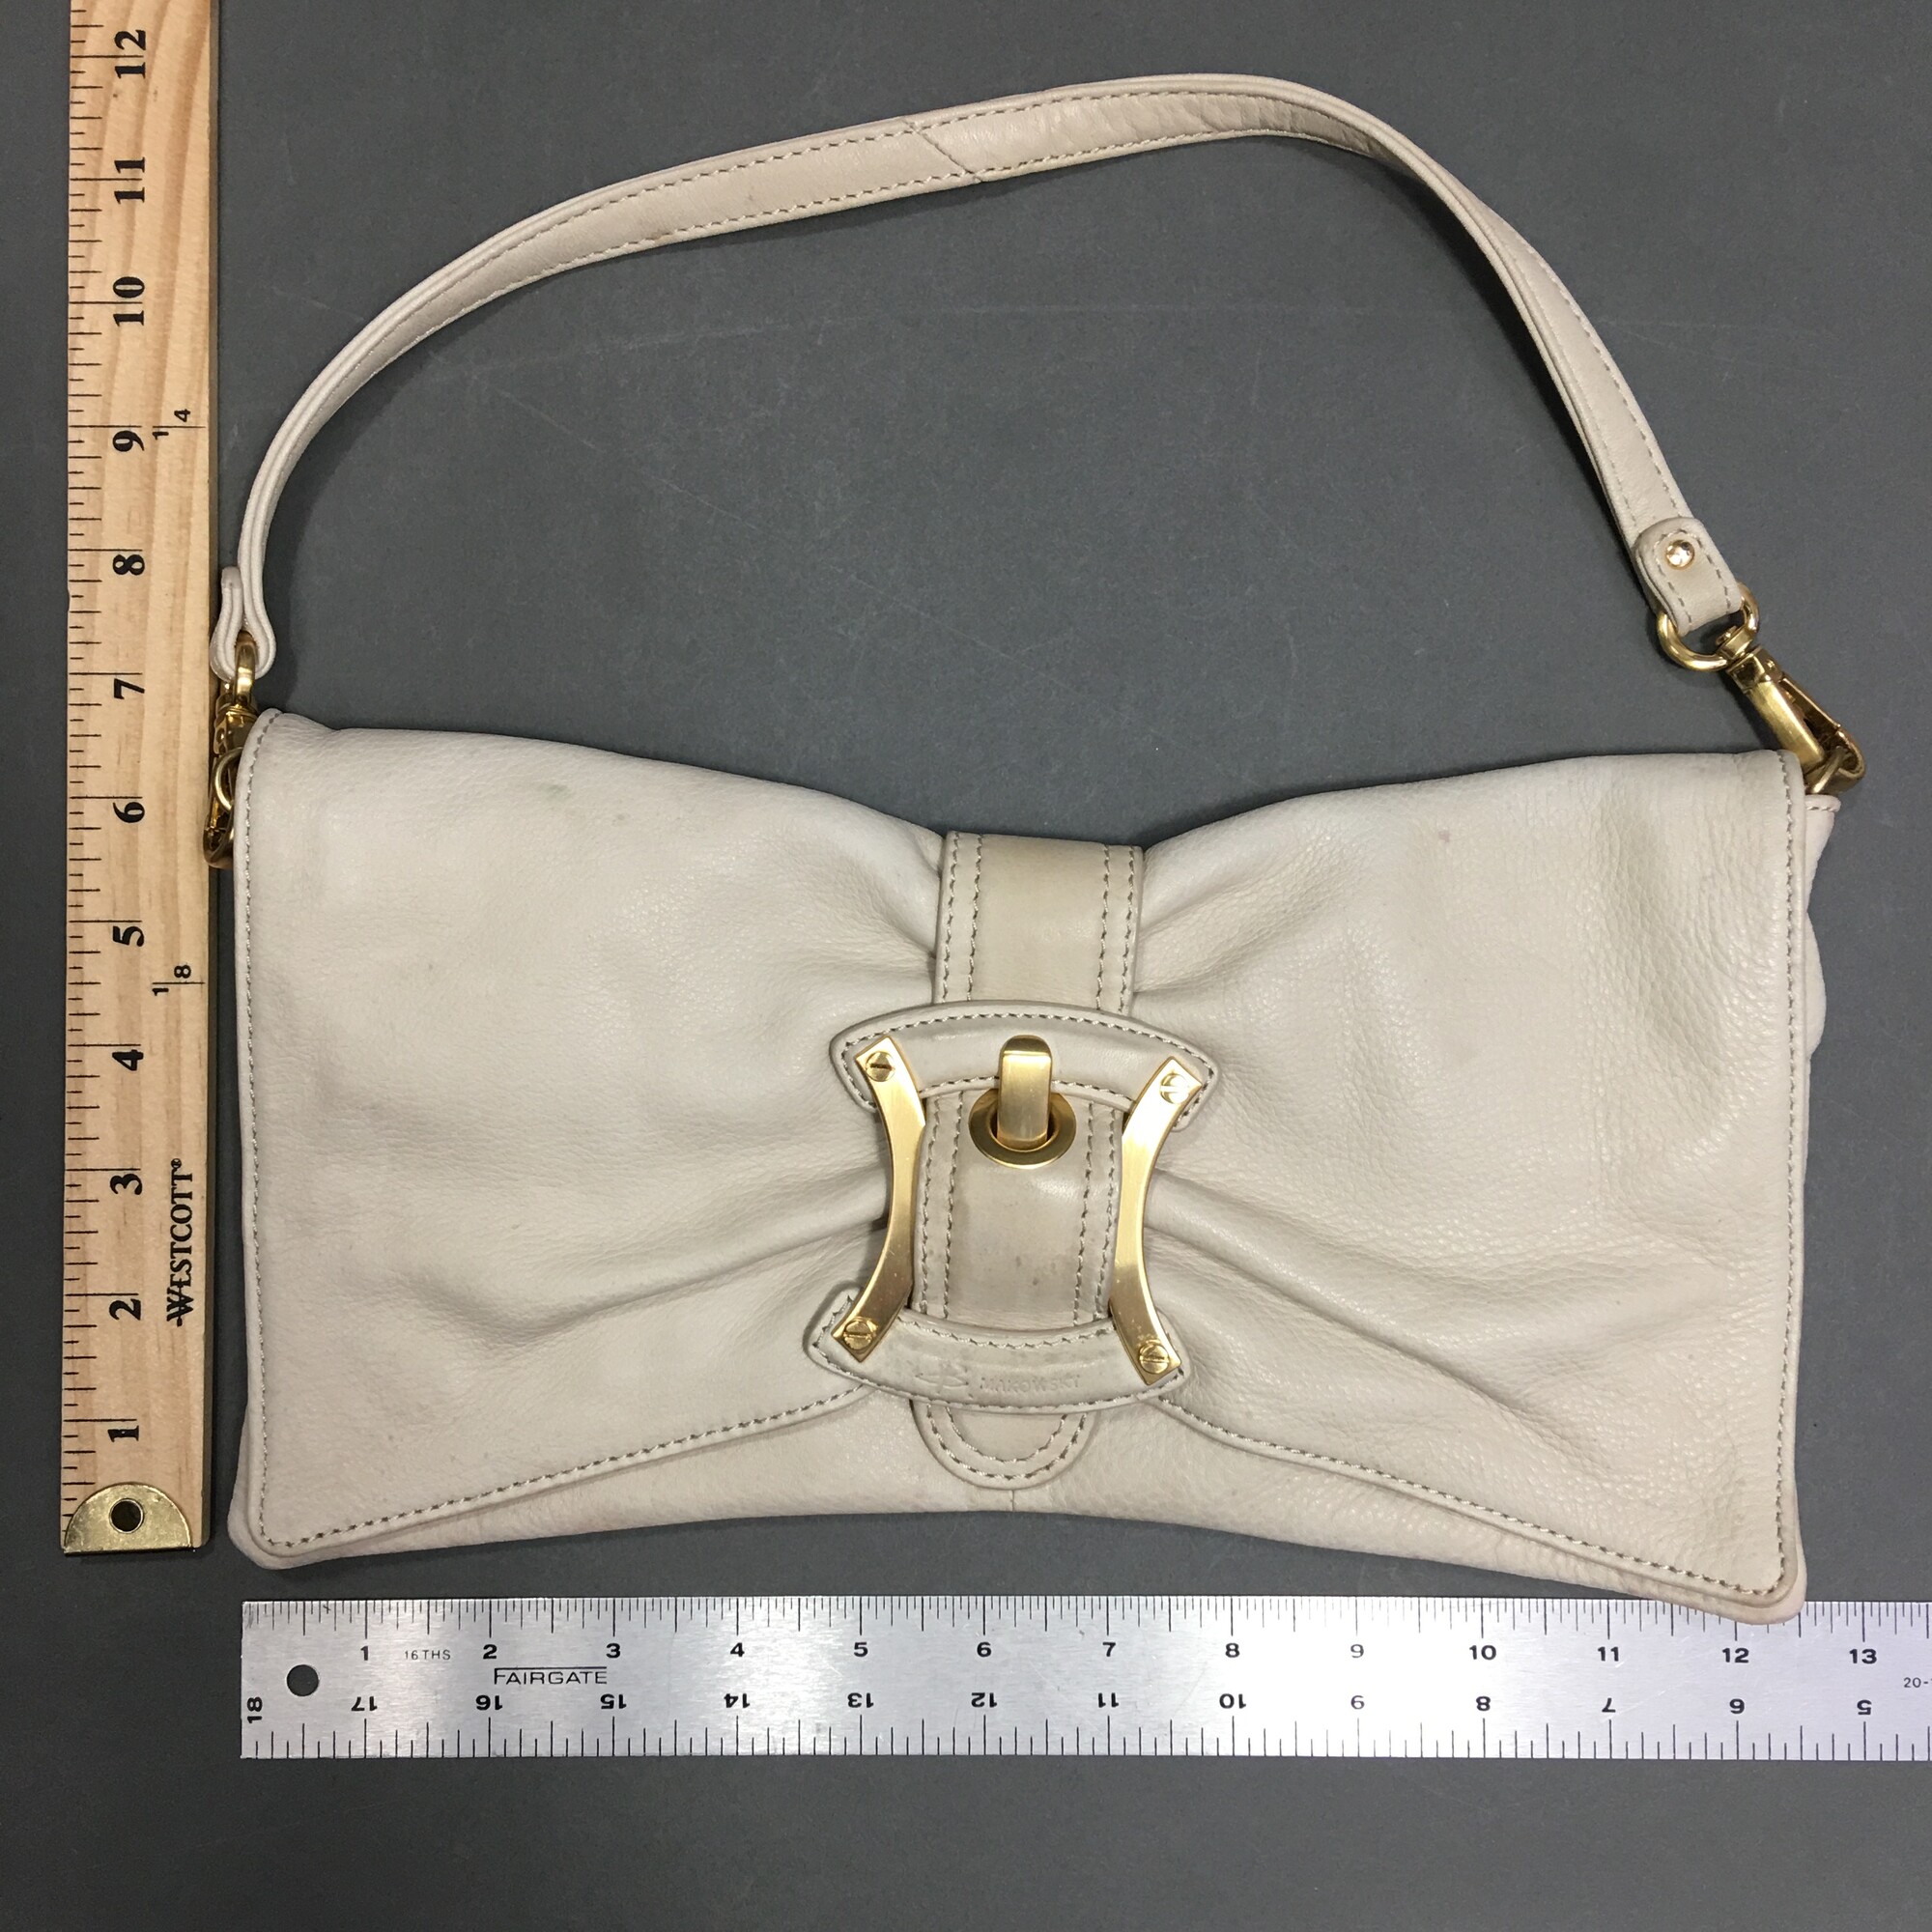 B. Makowsky Silver Leather Satchel Shoulder Bag Large Handbag Purse Metallic  | eBay